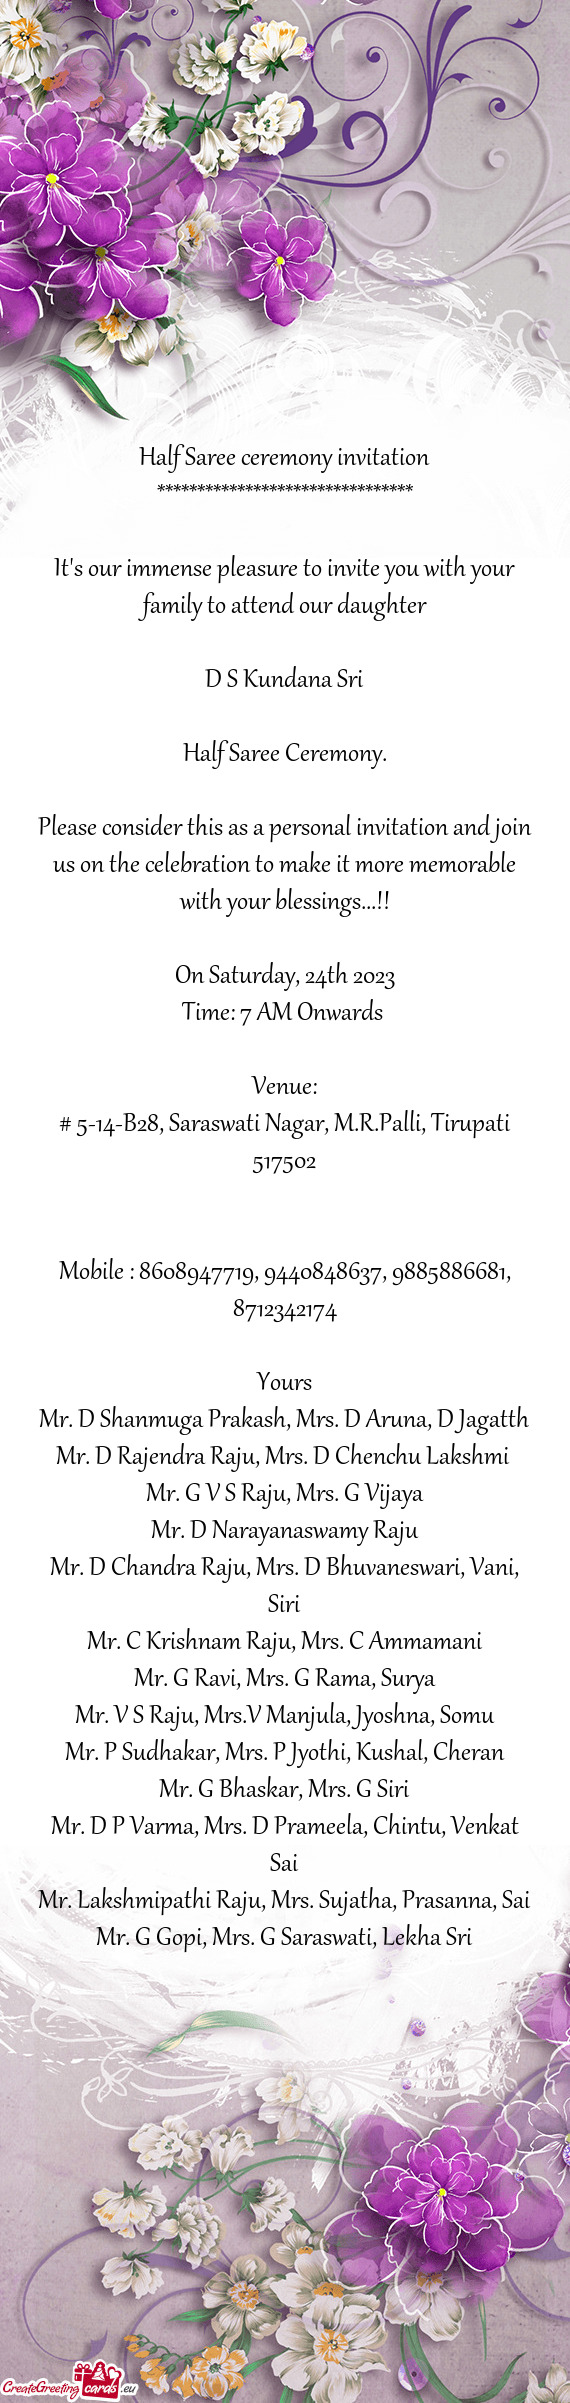 # 5-14-B28, Saraswati Nagar, M.R.Palli, Tirupati 517502